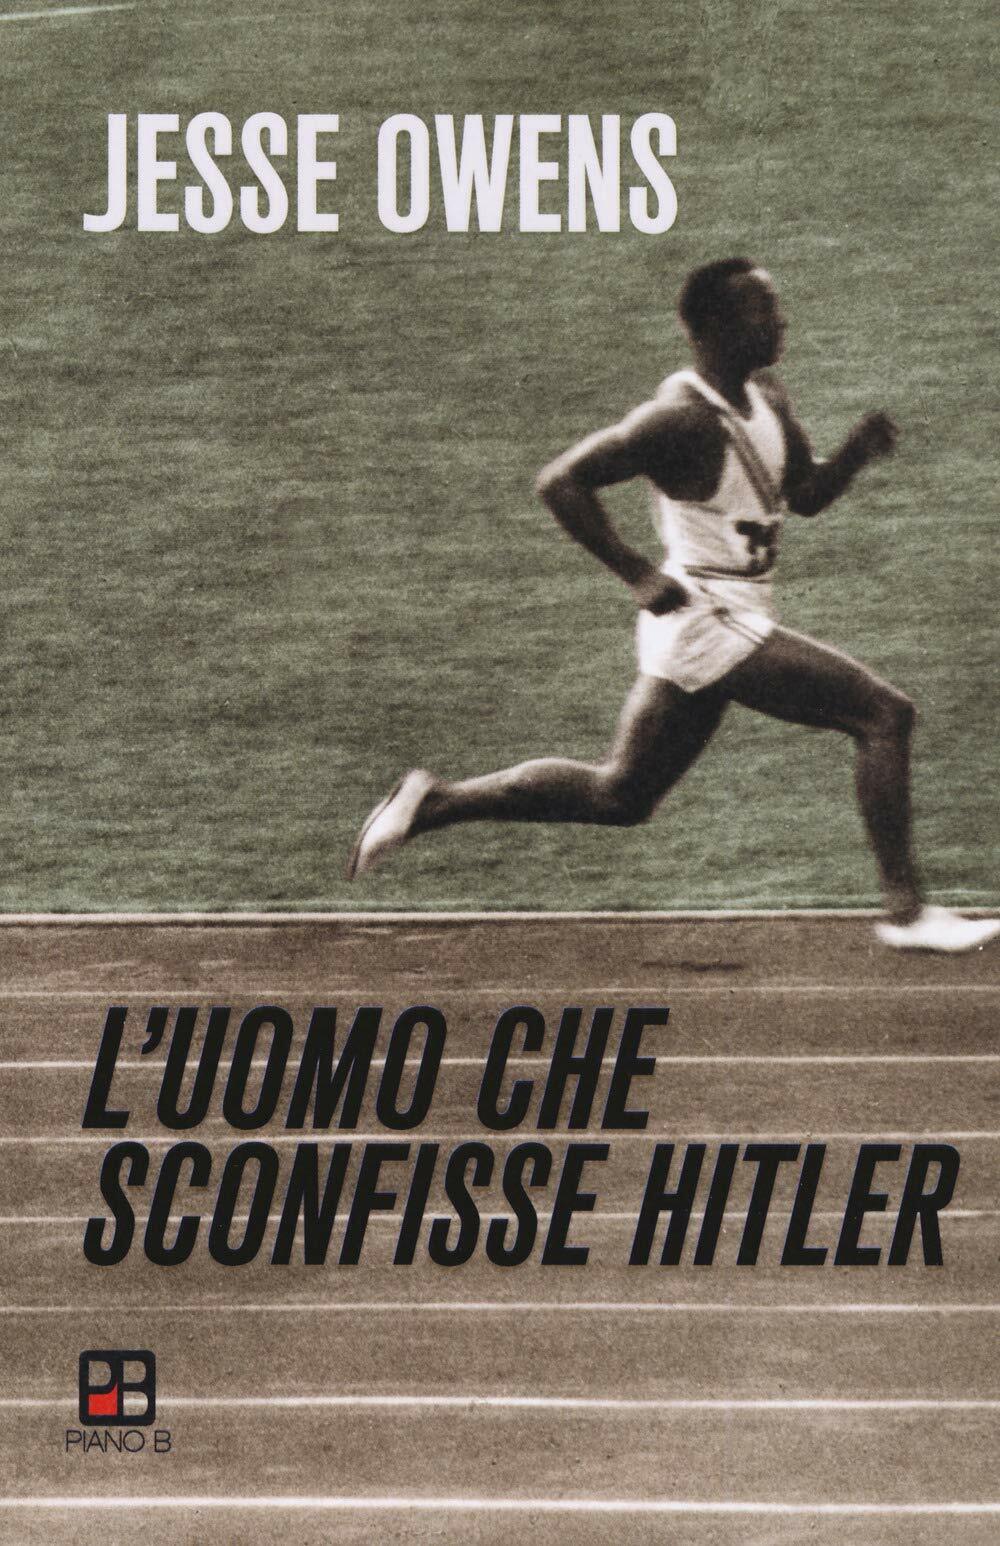 L'uomo che sconfisse Hitler - Jesse Owens - piano B, 2019 libro usato